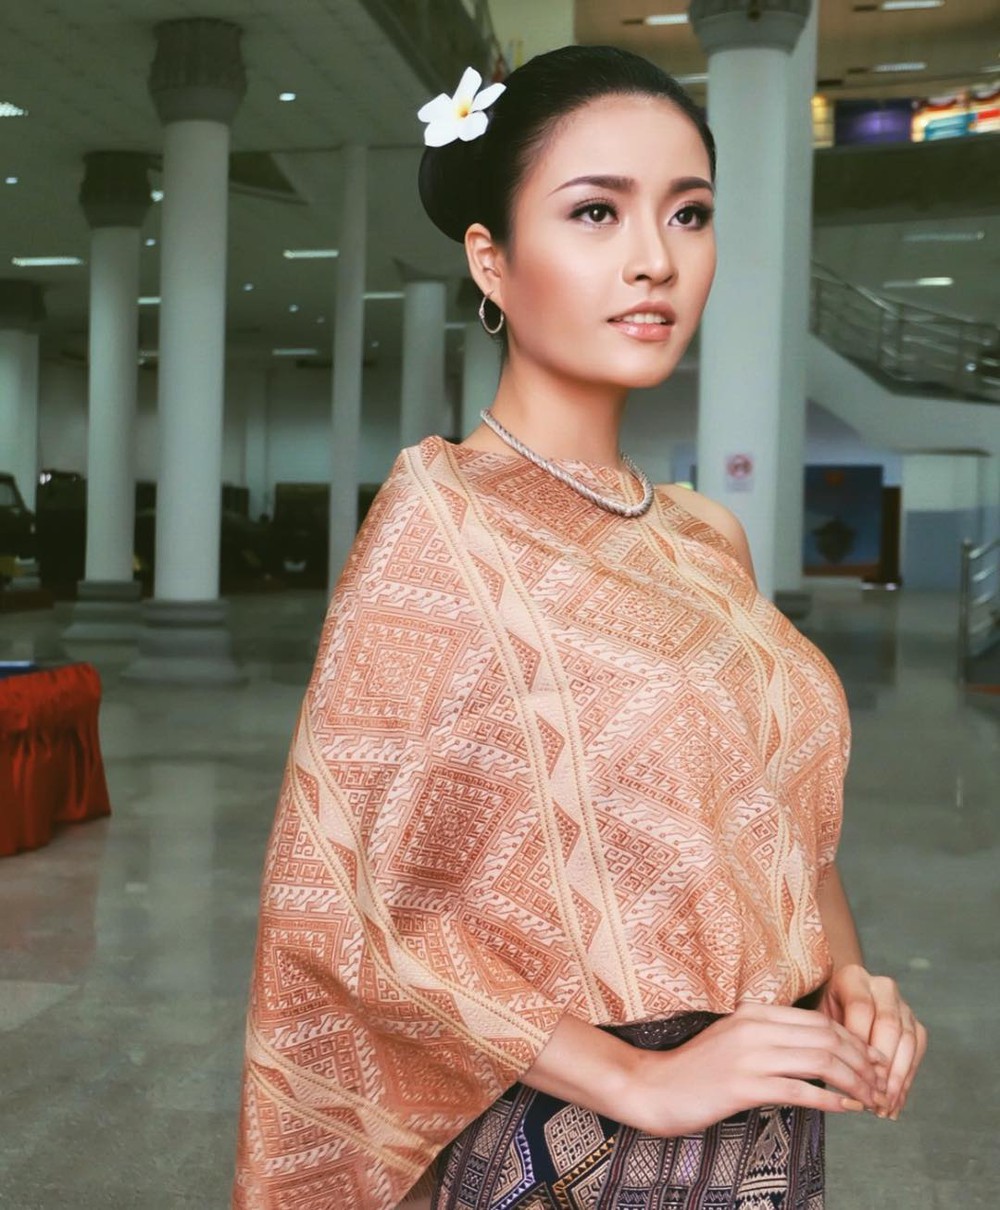 Hoa hậu Quốc tế Hòa bình tại VN: Ngỡ ngàng nhan sắc đẹp tựa minh tinh của Hoa hậu Lào - Ảnh 24.